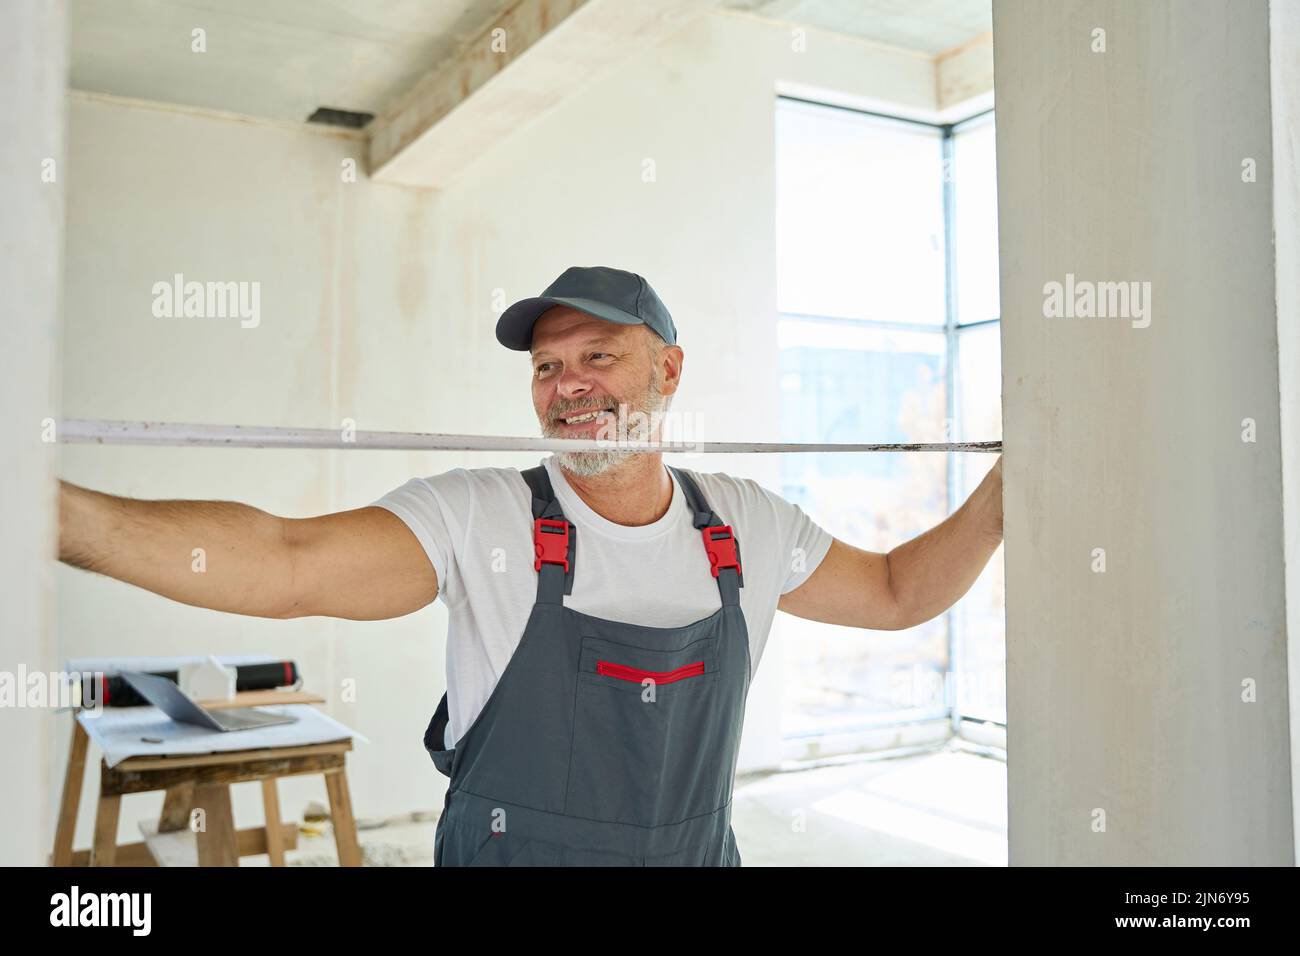 Un trabajador de pelo gris sonriente mide el ancho de la puerta con cinta métrica Foto de stock